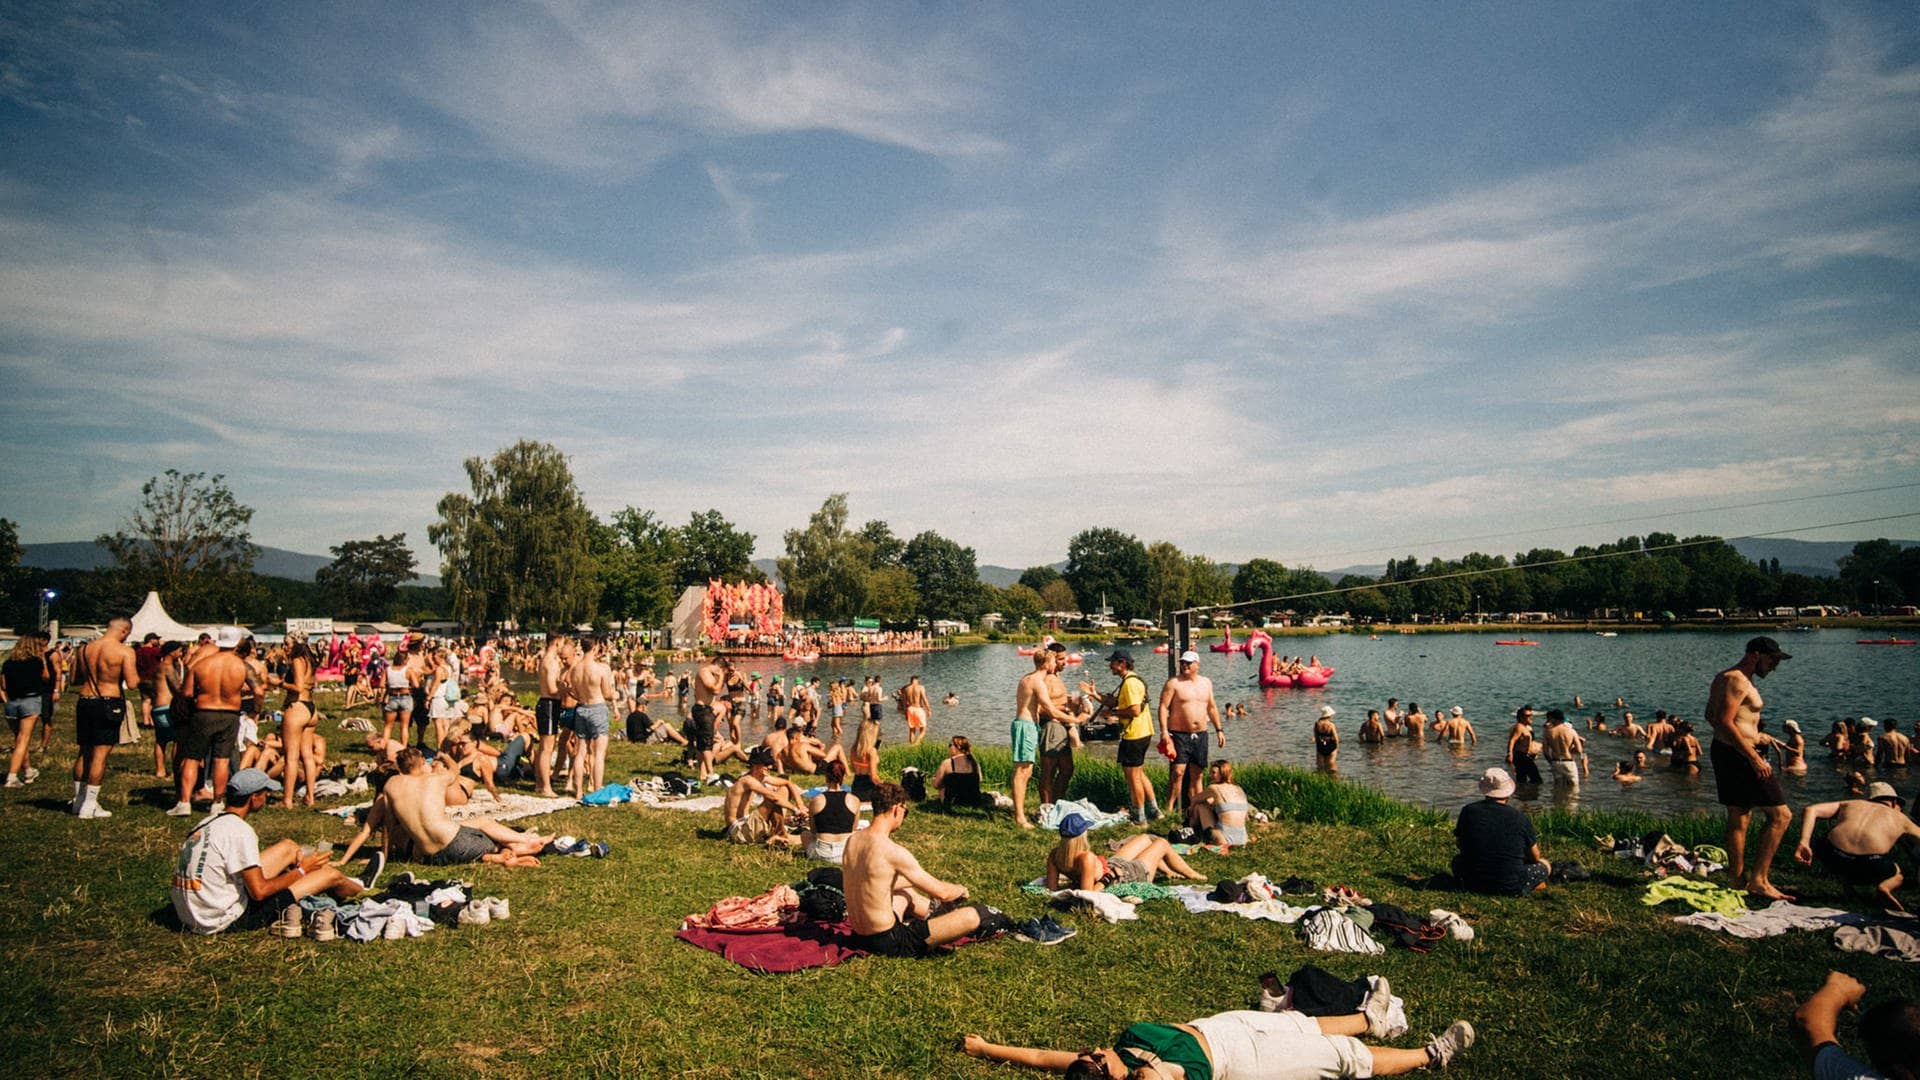 Das Sea You Festival 2023 am Tunisee in Freiburg: Mit 30 Grad bietet das Festival gleich zu Beginn einen wunderschönen Sommertag für die Besucher. (Foto: SWR, Nico Neithardt)